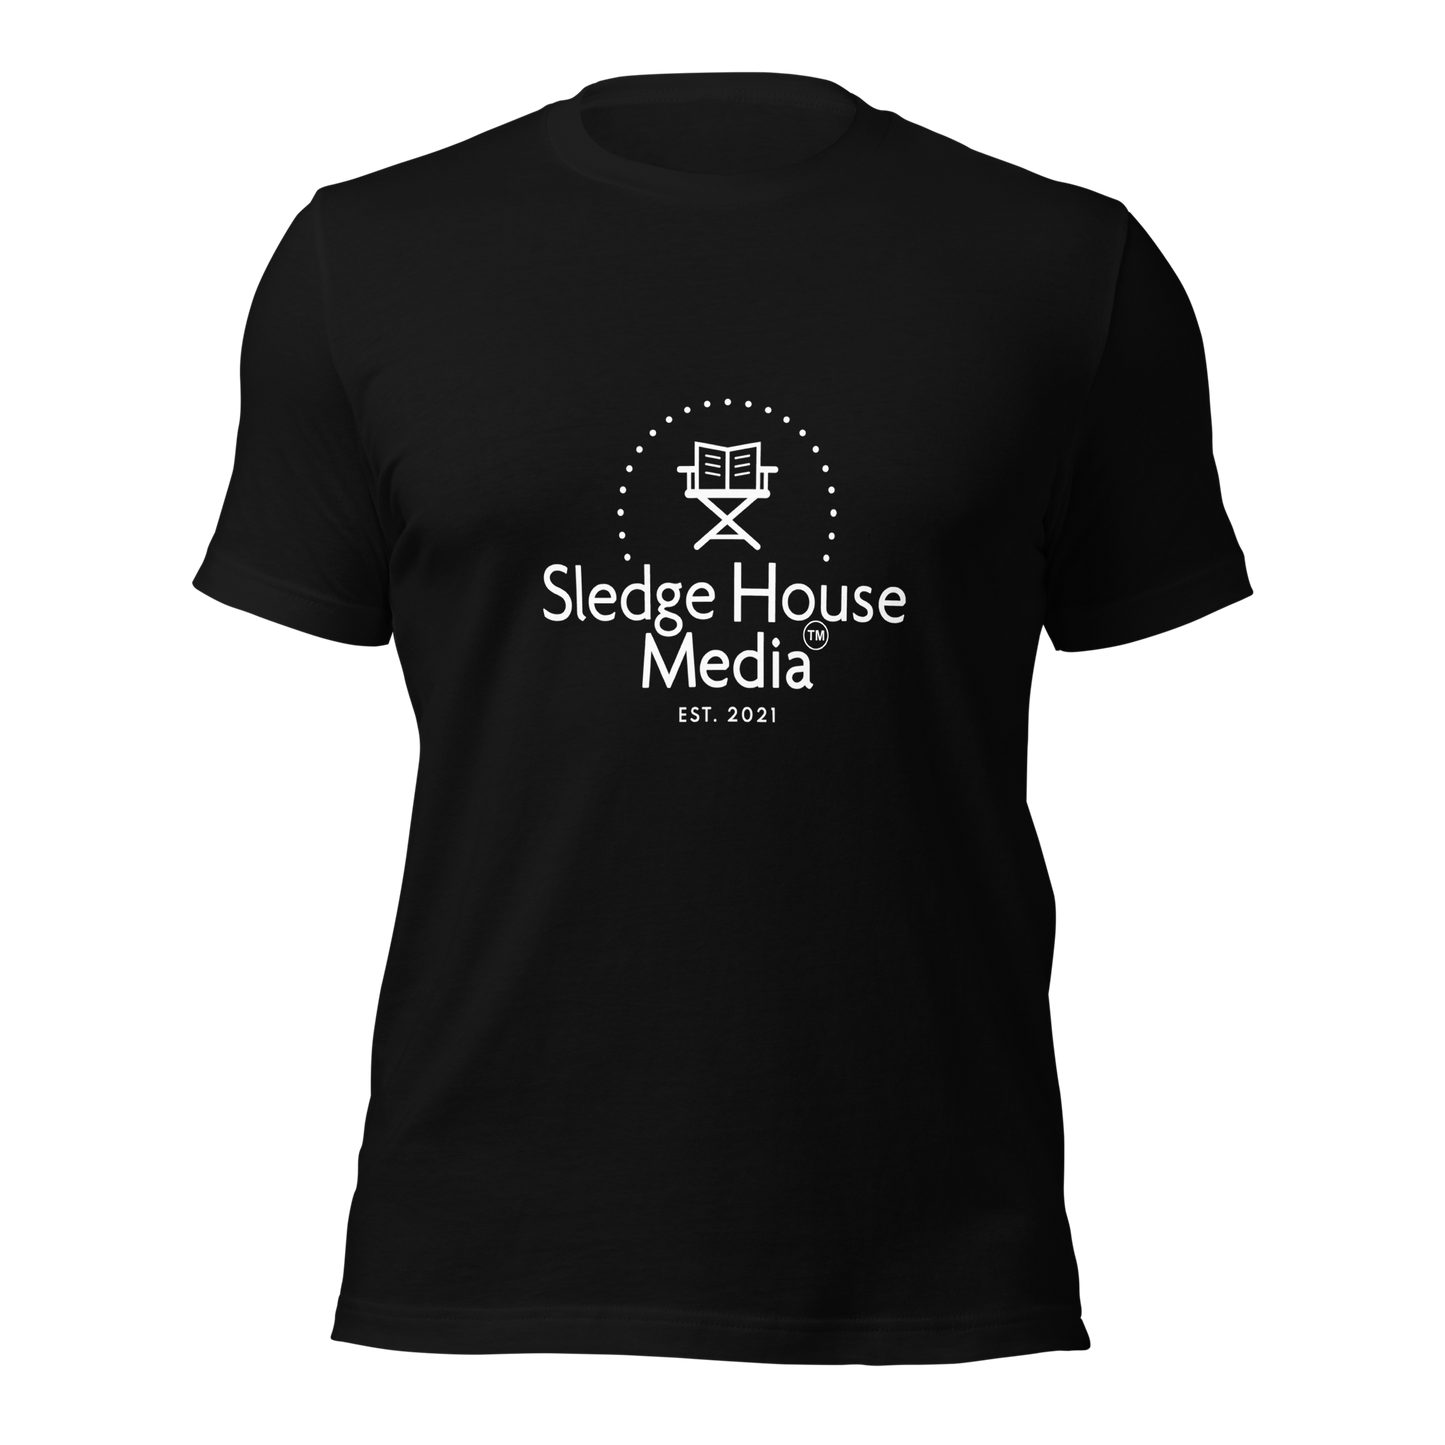 "The OG" Sledge House Media Unisex T-Shirt